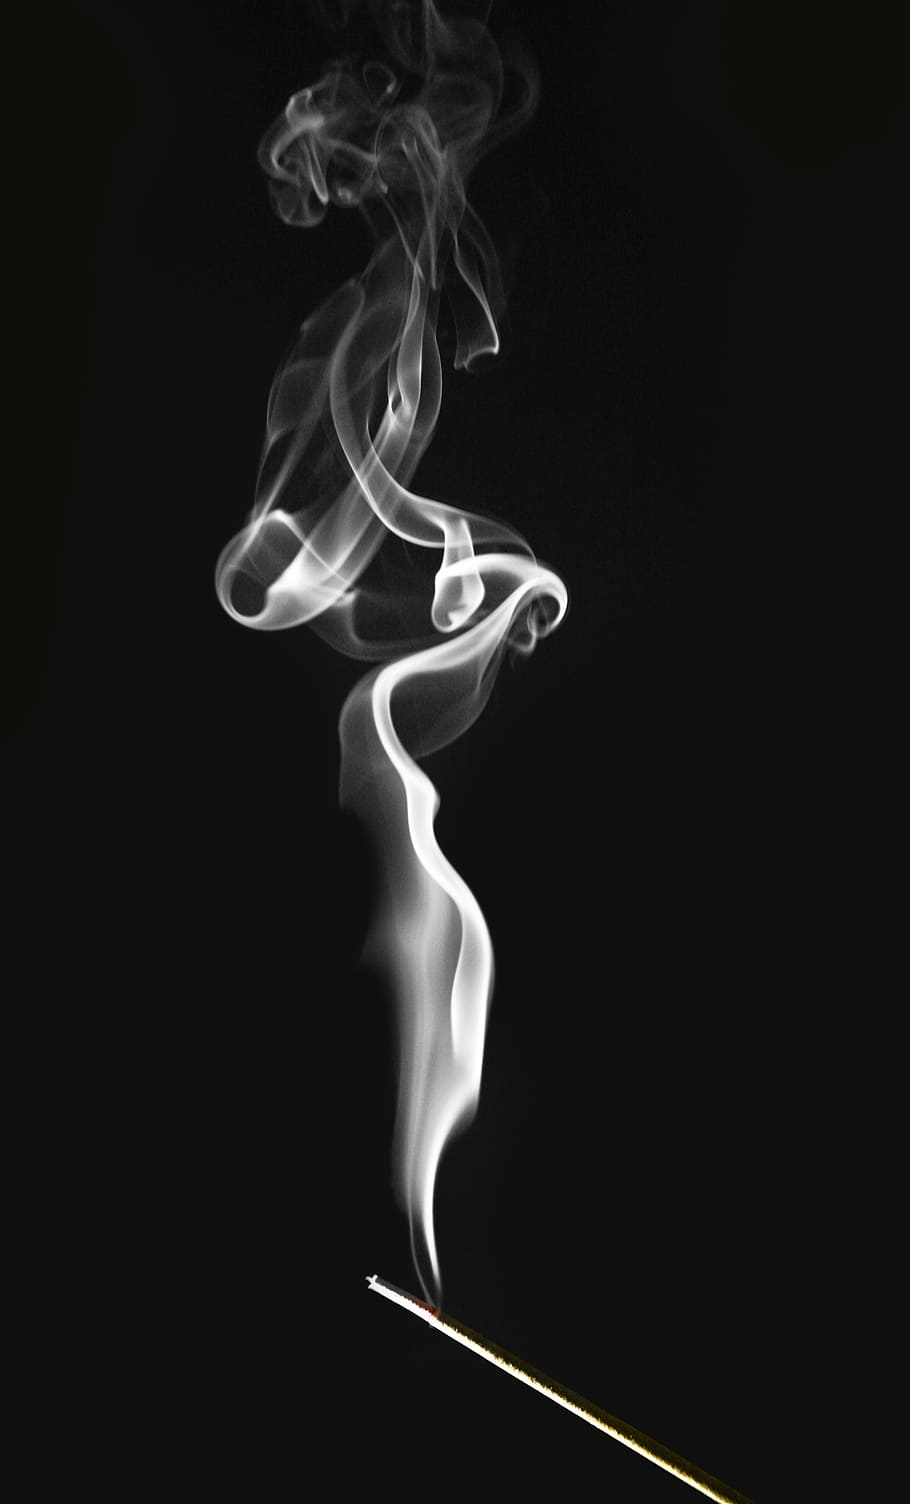 smoke, black, background, incense, spirals, swirls, contrast, burn, smell, mysticism